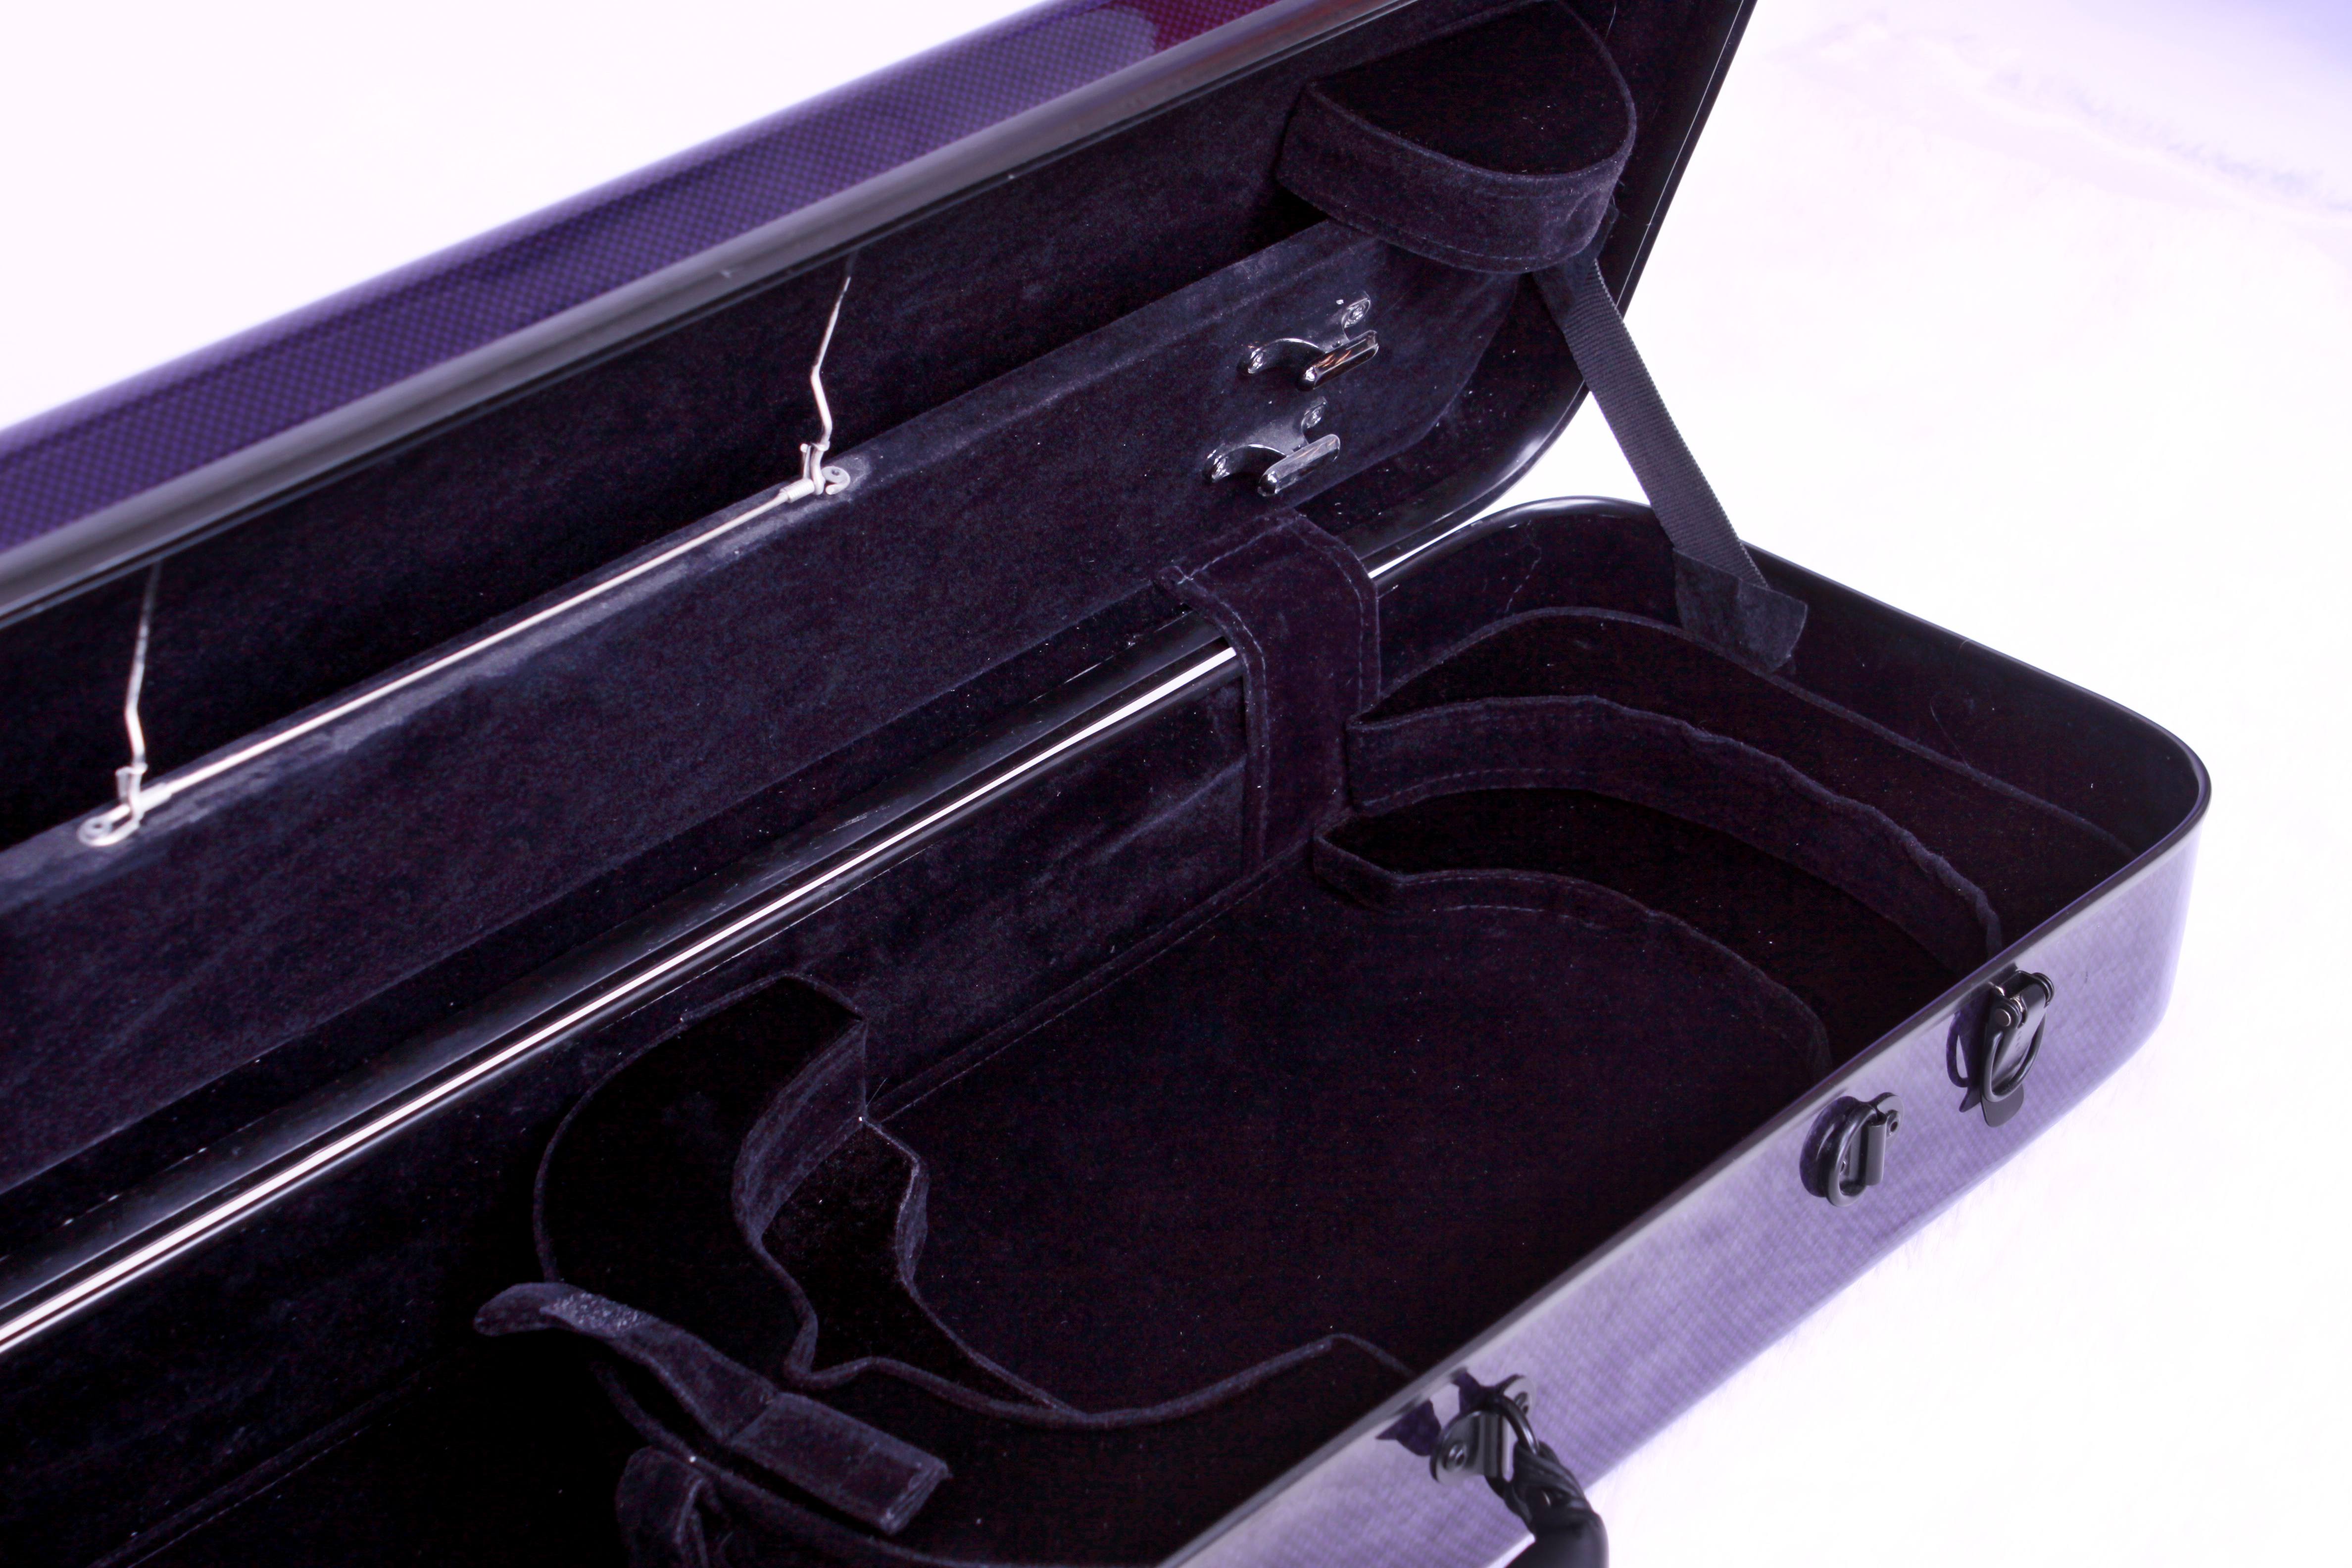 4/4 Reinforced Fiber Violin Hard Case(CSV-F081G)